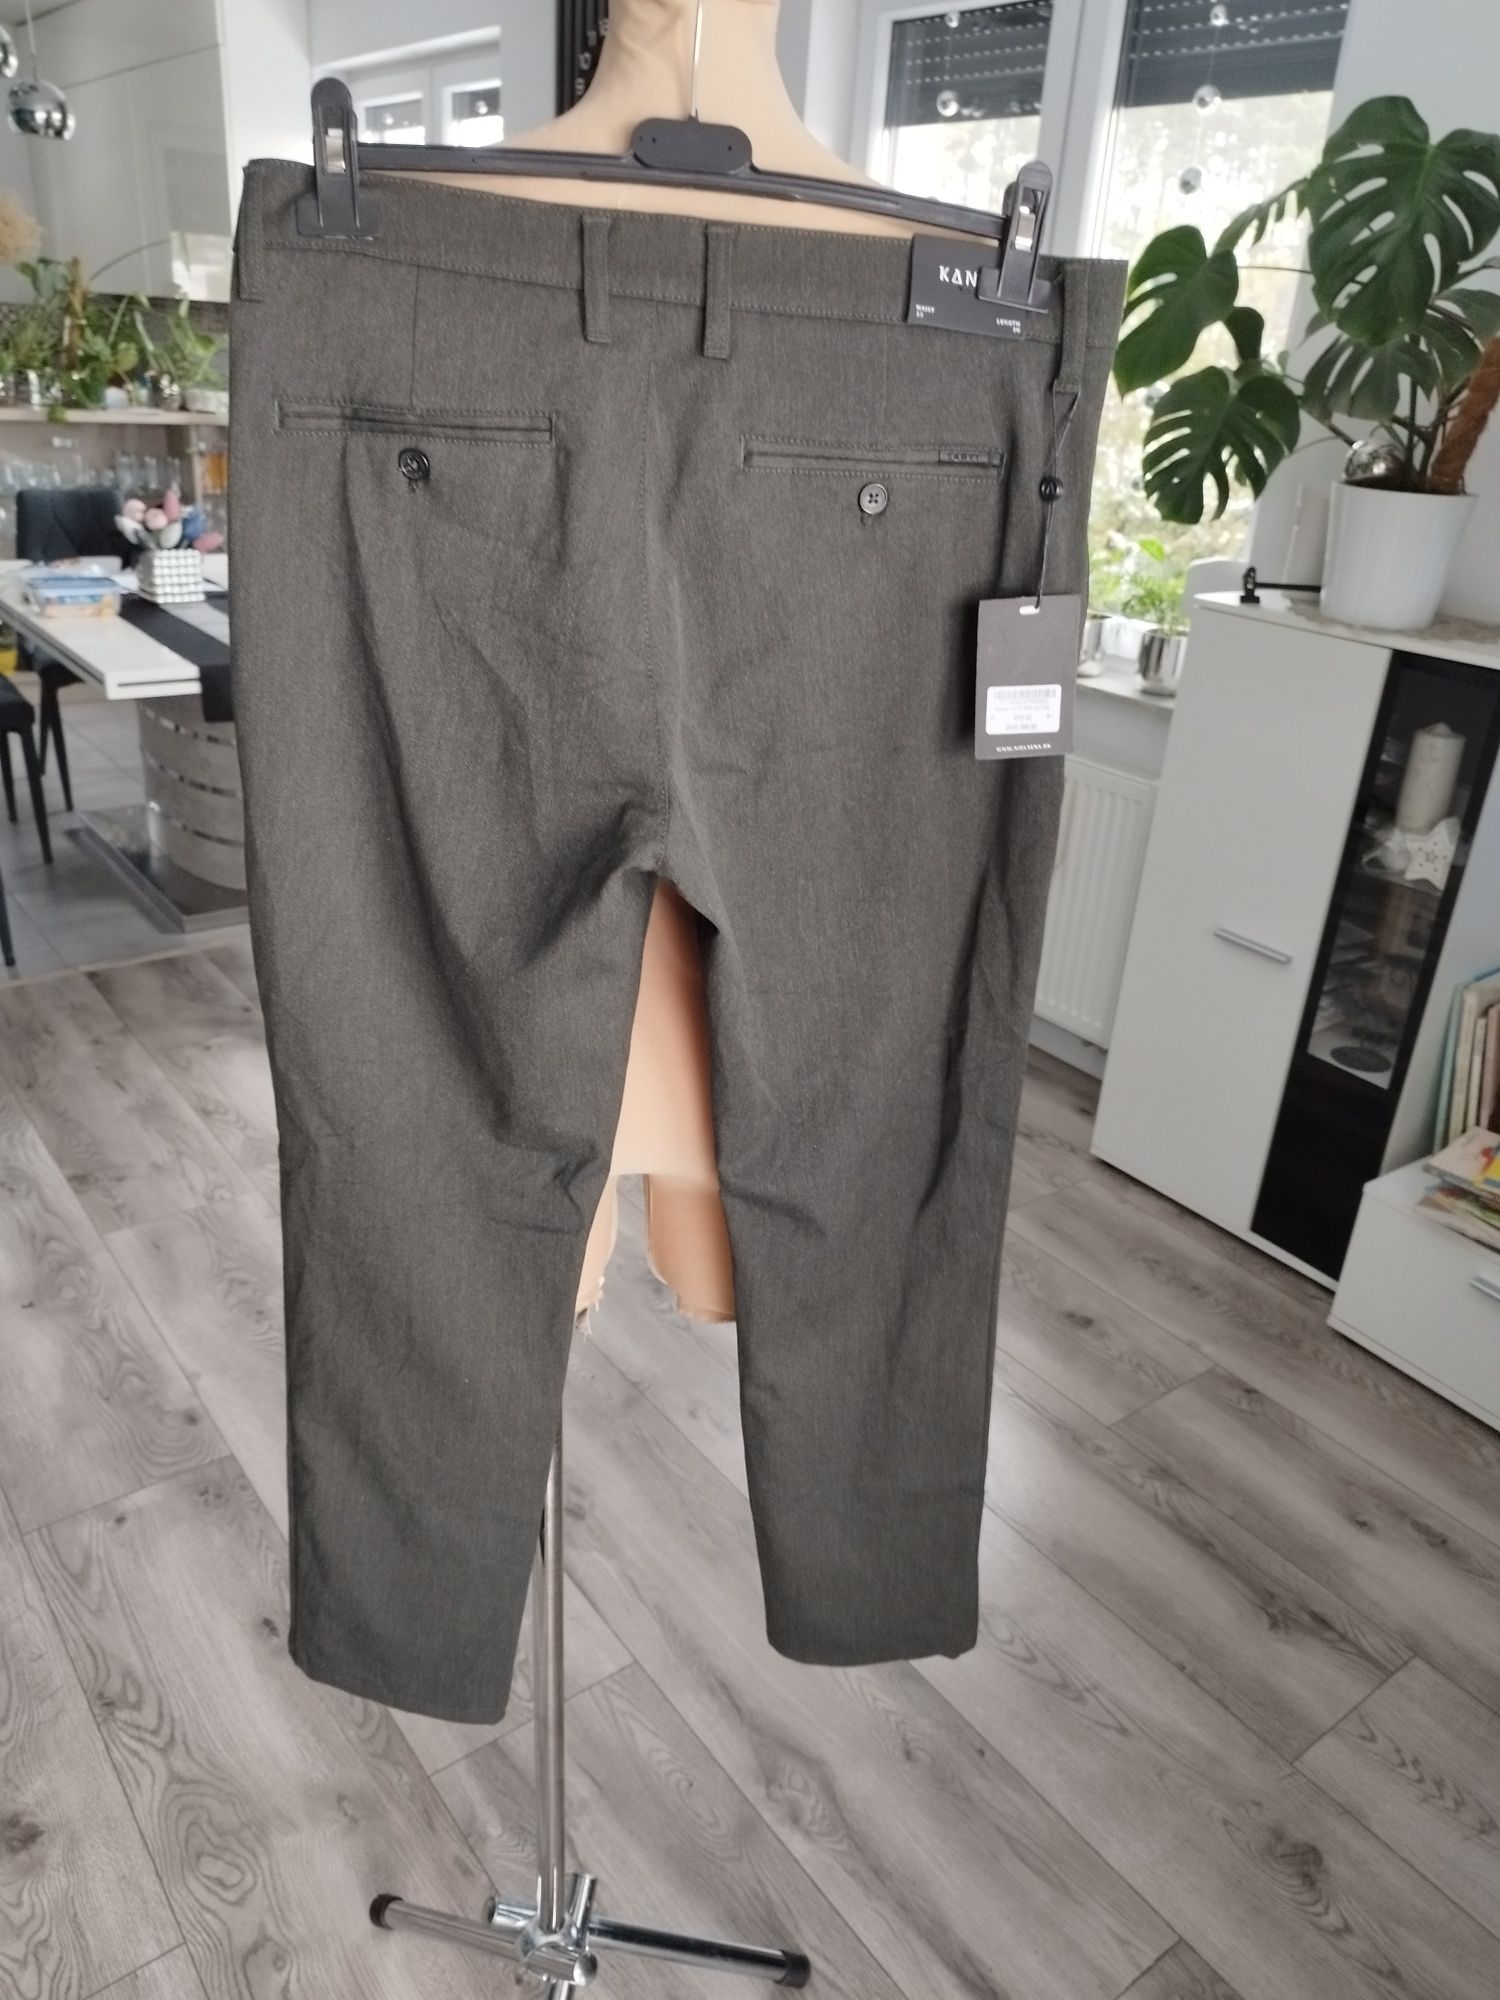 W33 L 30 Kantt nowe spodnie chinosy męskie duńskie